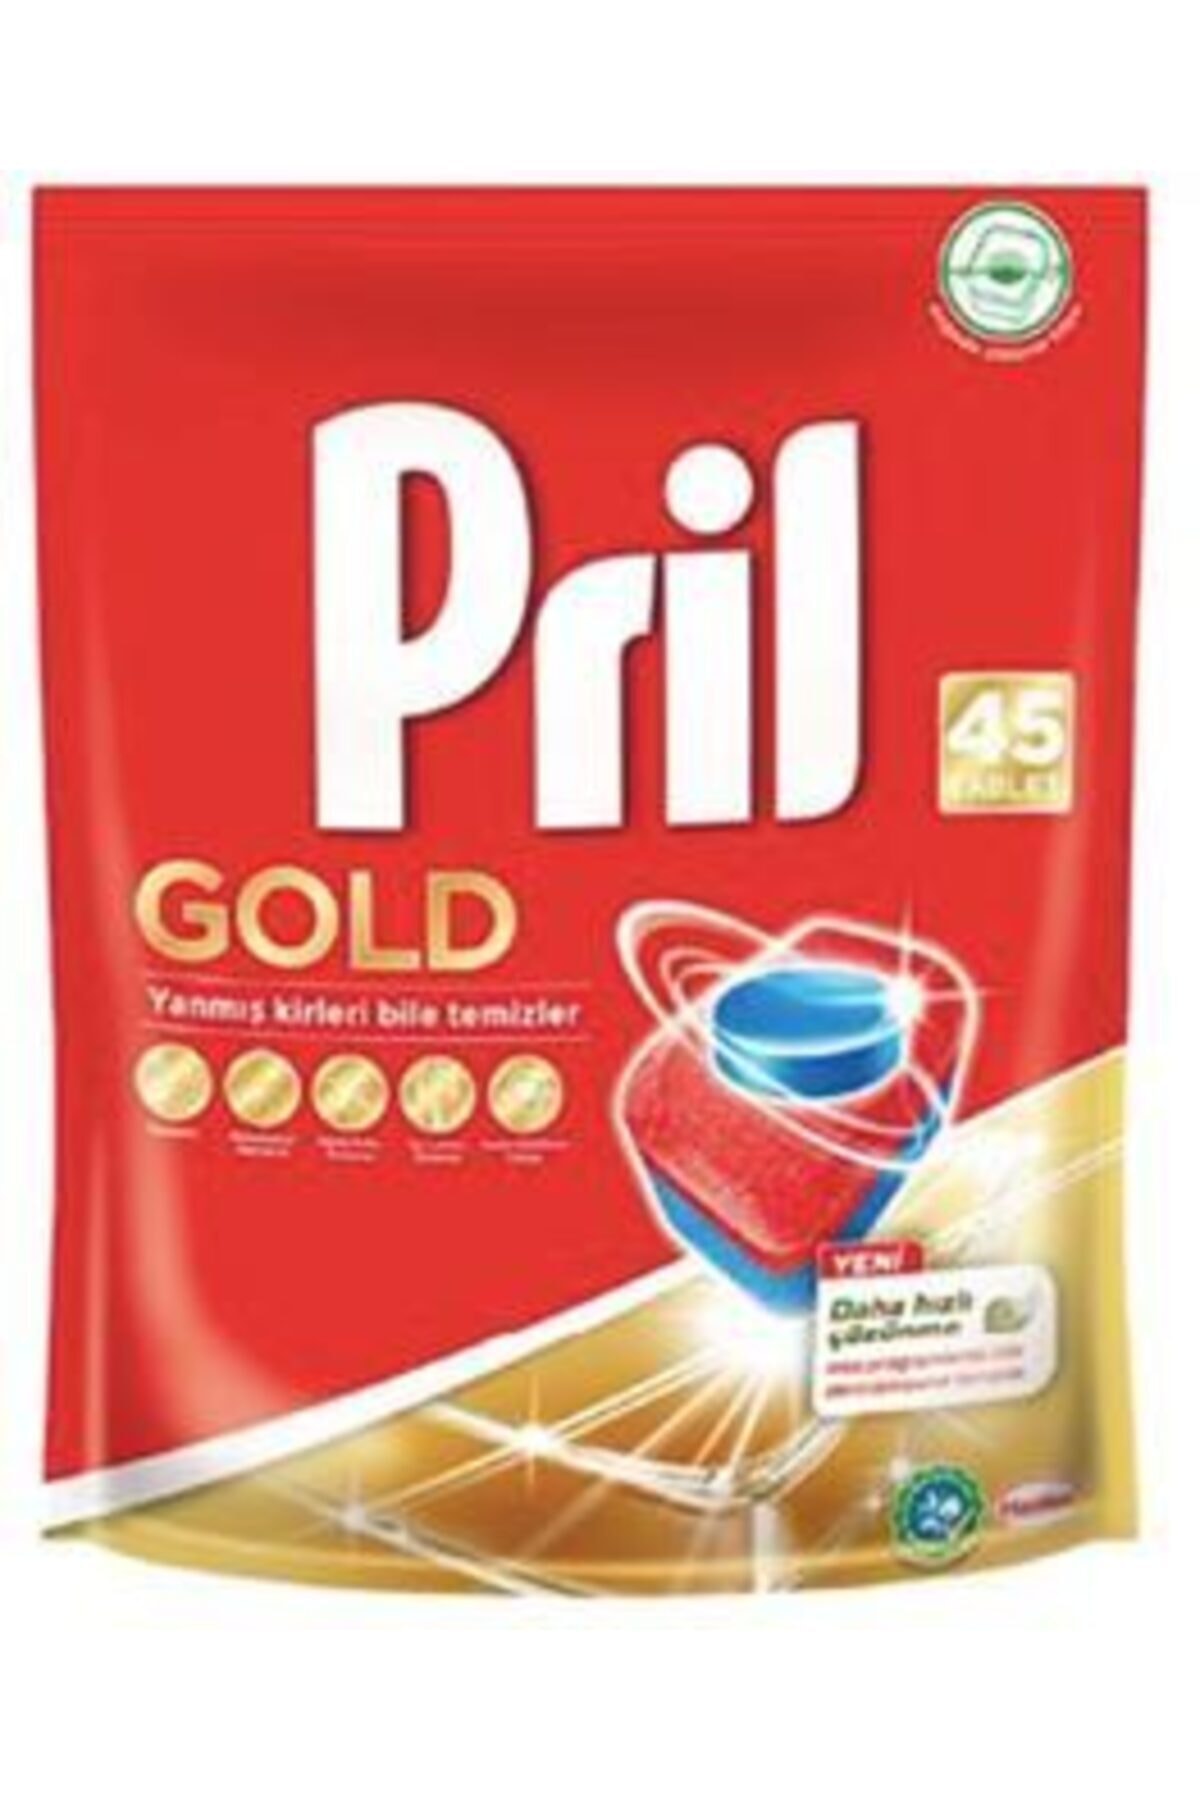 Pril Prıl Gold Tablet 45 Lı